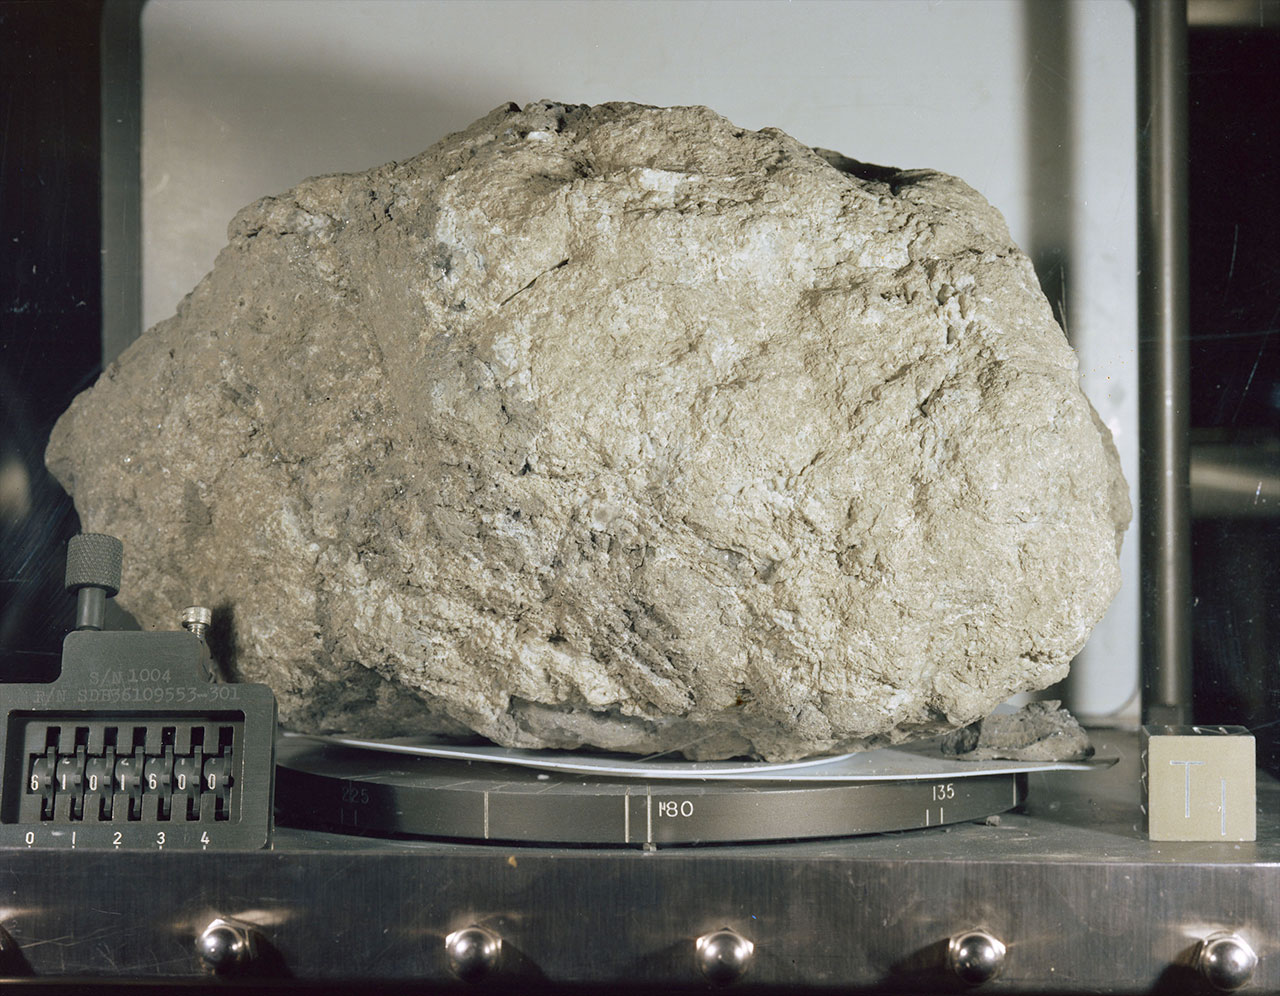 "muley grande," Llamada así por Bill Muehlberger, el líder del equipo de geología de campo del Apolo 16, fue la roca lunar más grande que regresó a la Tierra desde las seis misiones de aterrizaje lunar del Apolo entre 1969 y 1972.